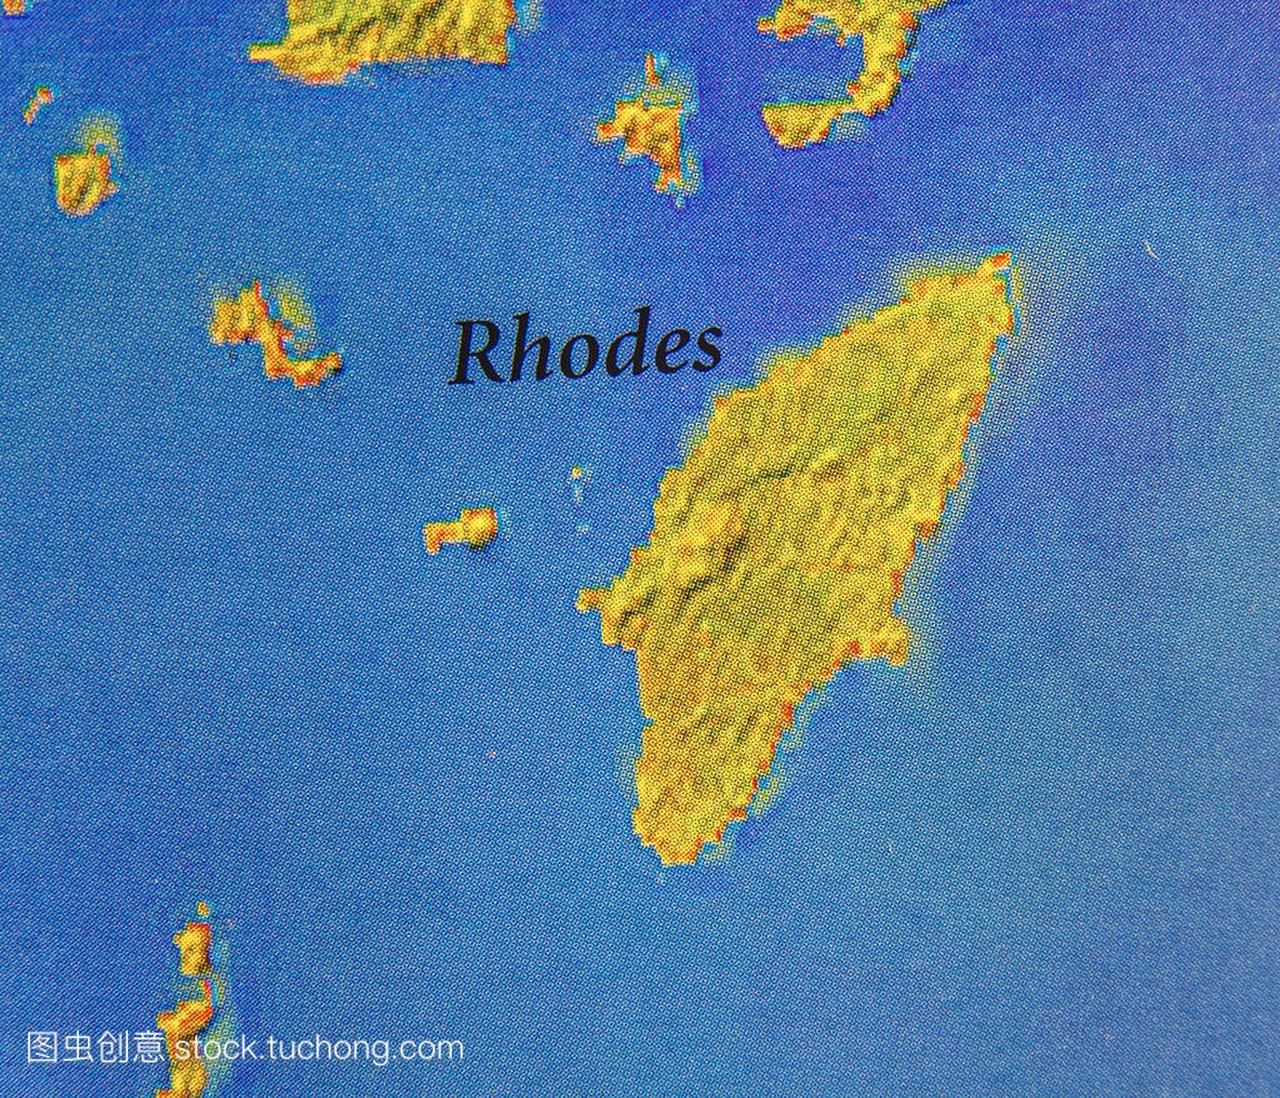 欧洲国家希腊的地理地图岛屿罗德斯岛